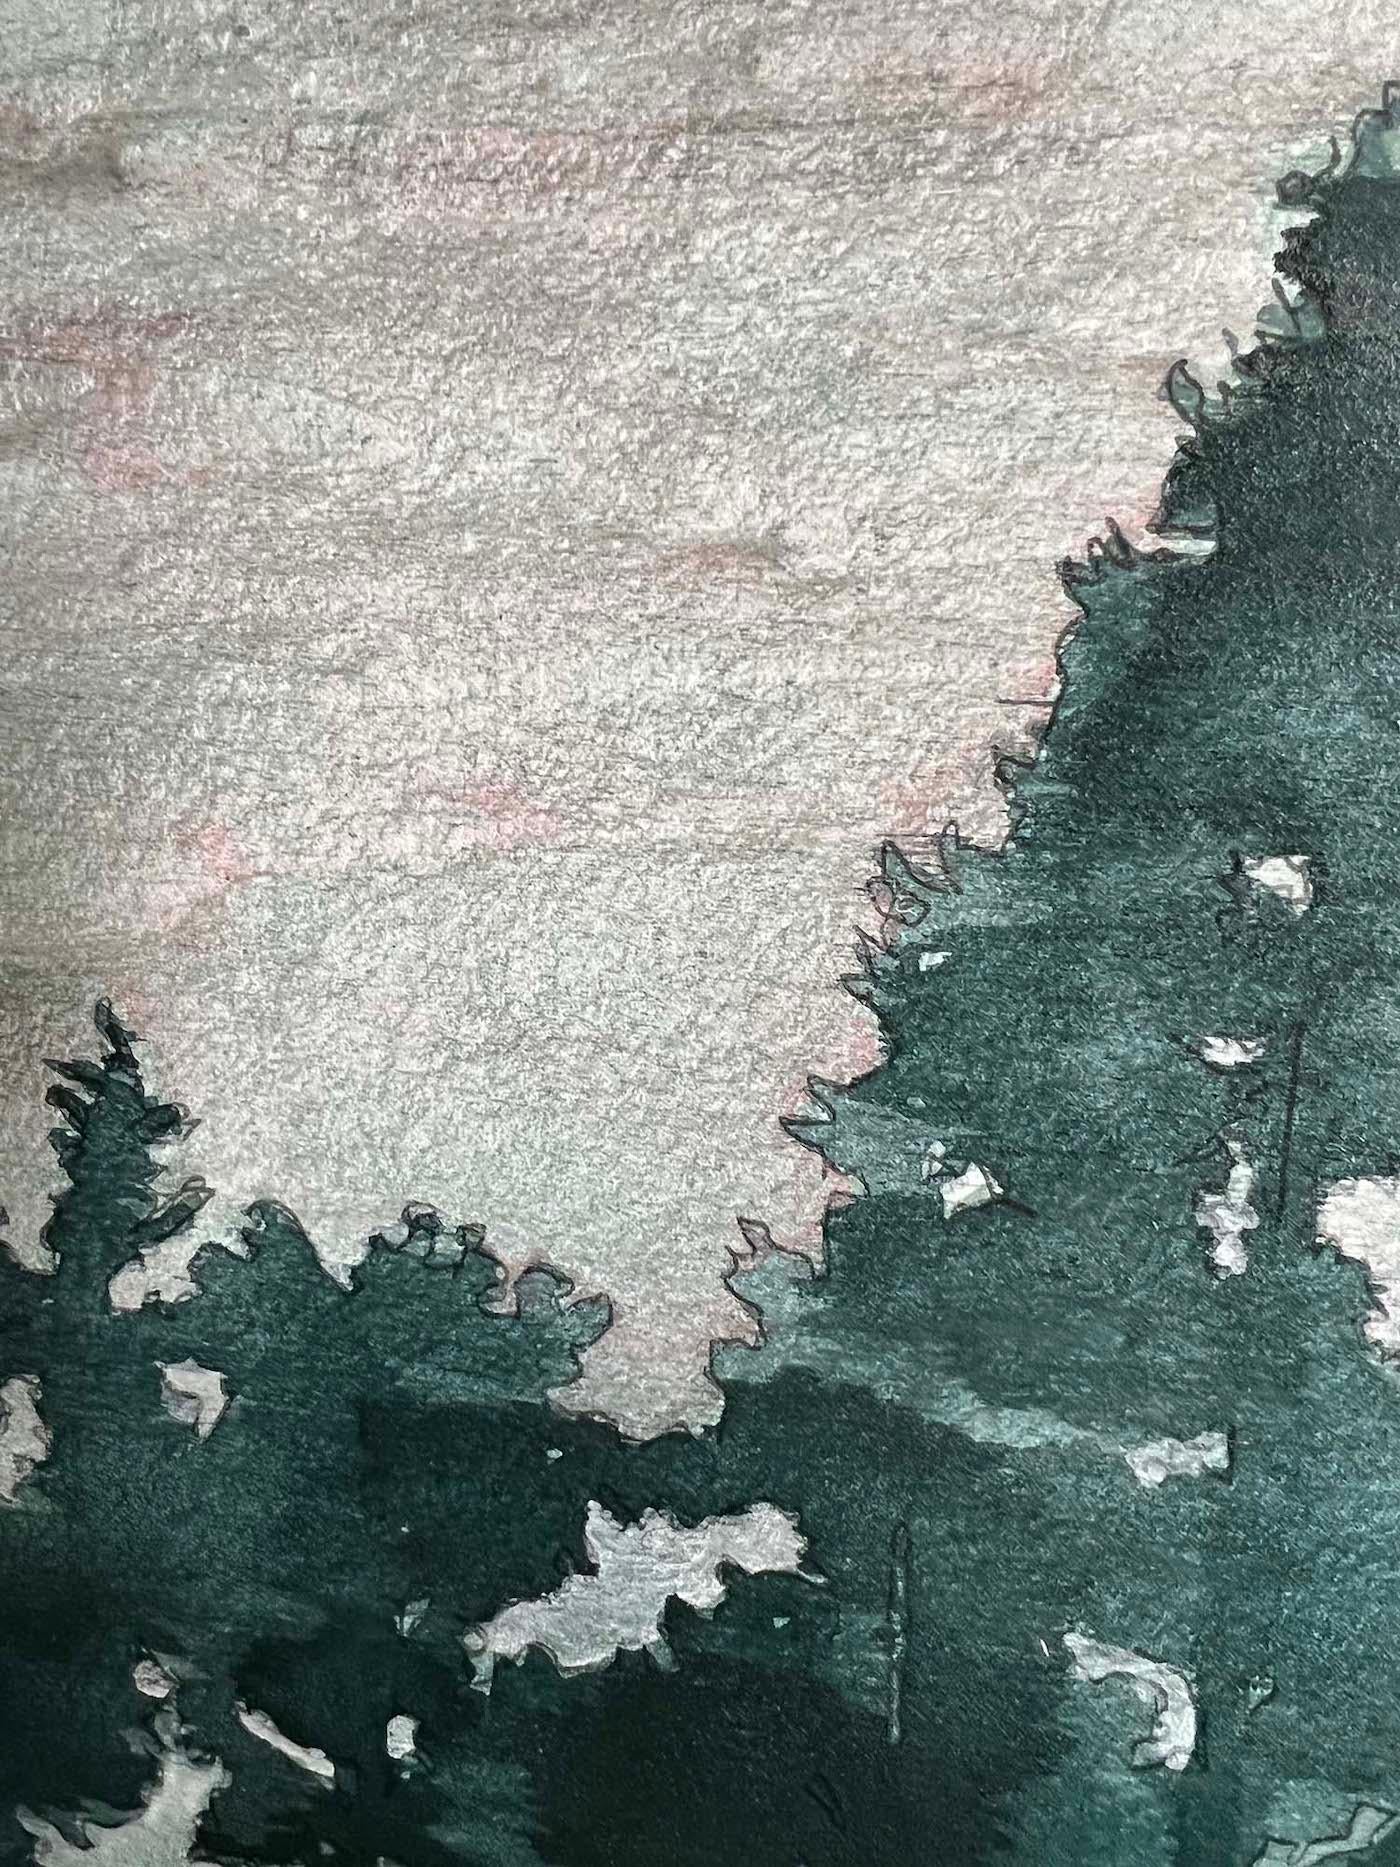 Der Wald vor lauter Bäumen von Rebecca Tucker [2021]
original und handsigniert vom Künstler 
Acryl auf Holzplatte
Bildgröße: H:51 cm x B:51 cm
Gesamtgröße des ungerahmten Werks: H:51x51 cm x B:51 cm x T:2cm
Ungerahmt verkauft
Bitte beachten Sie,